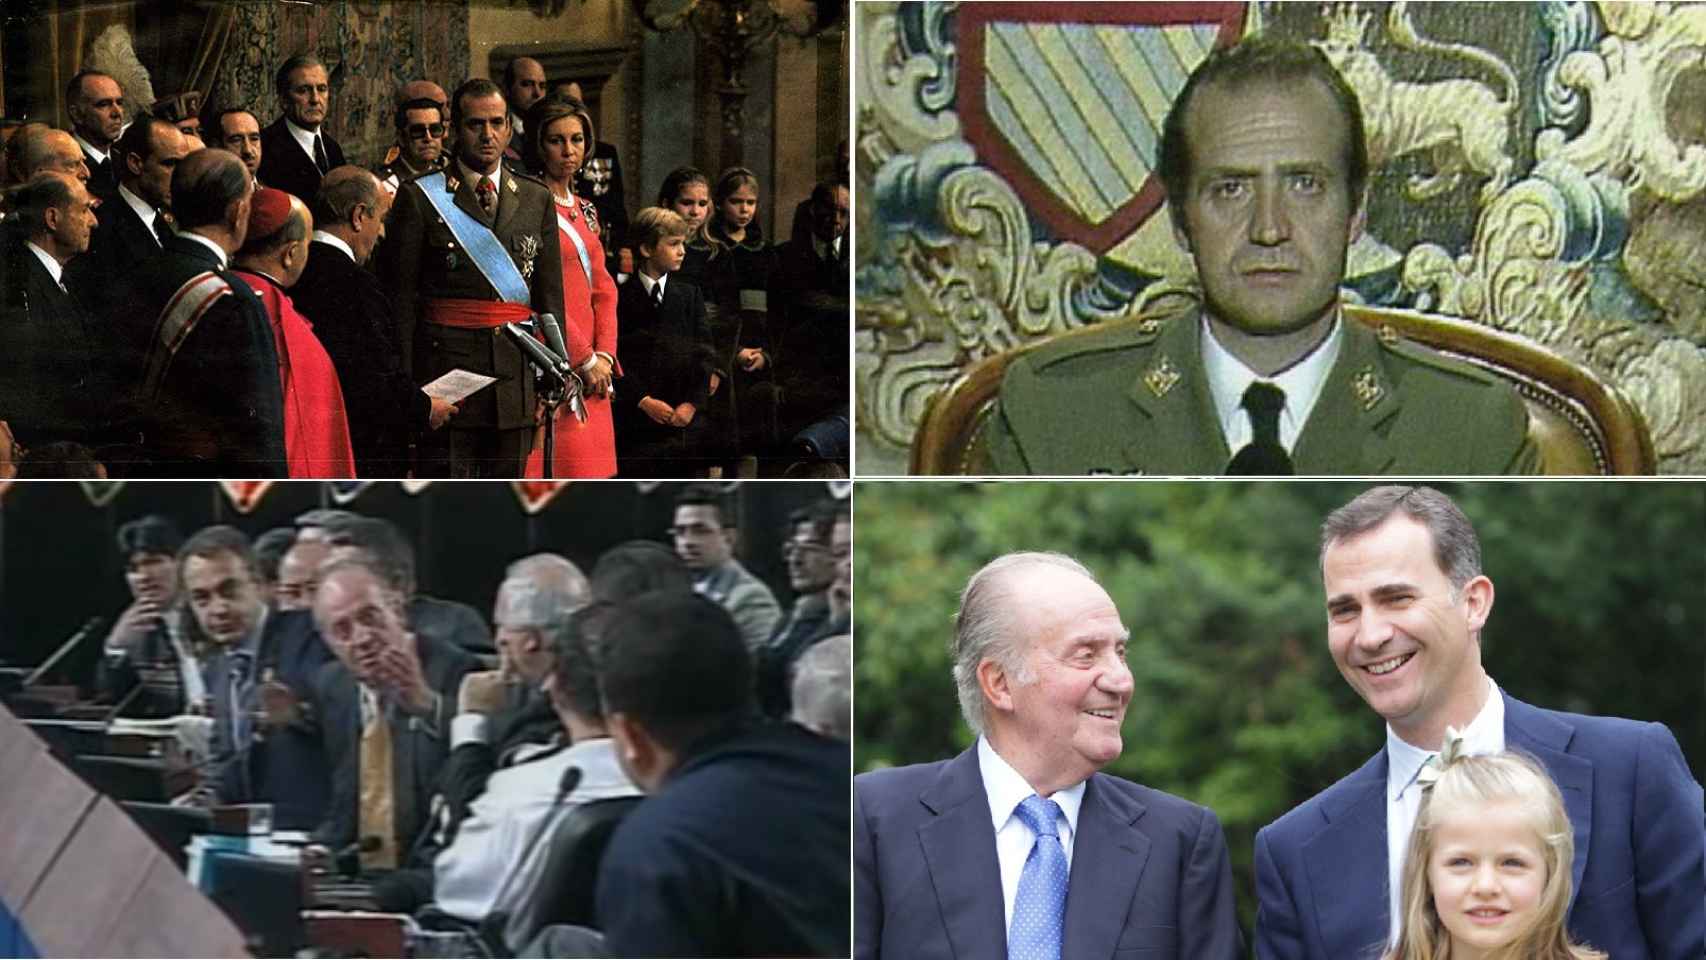 La vida pública de don Juan Carlos en cerca de cuatro décadas como Rey.